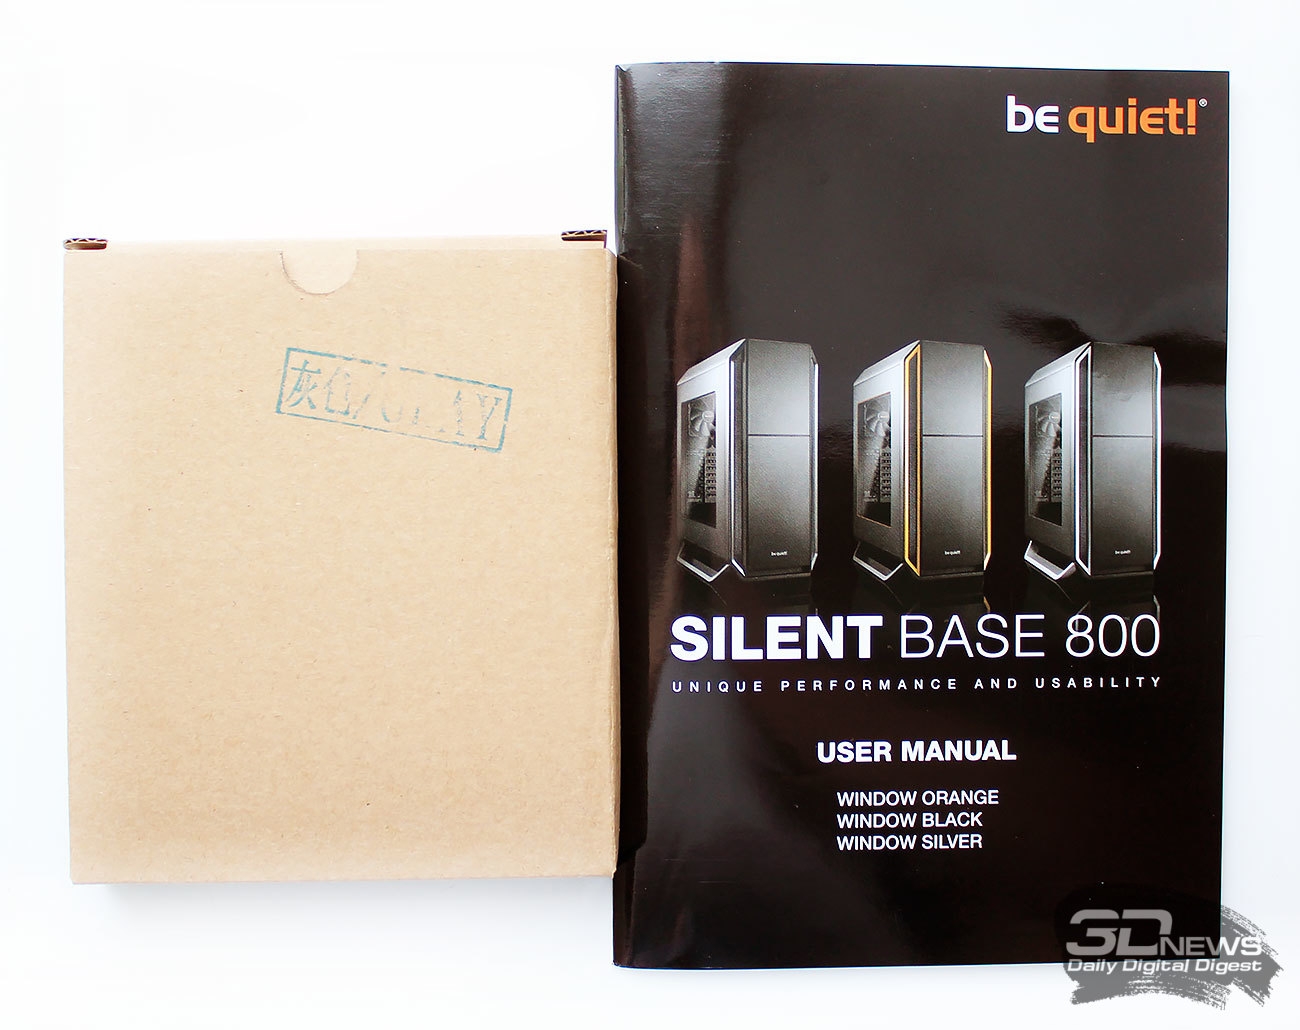 Quiet base 800. Be quiet Silent Base 800. Be quiet Silent Base 800 Orange. Be quiet Shadow Base 800. John win Silver SMKCO Парфюм.